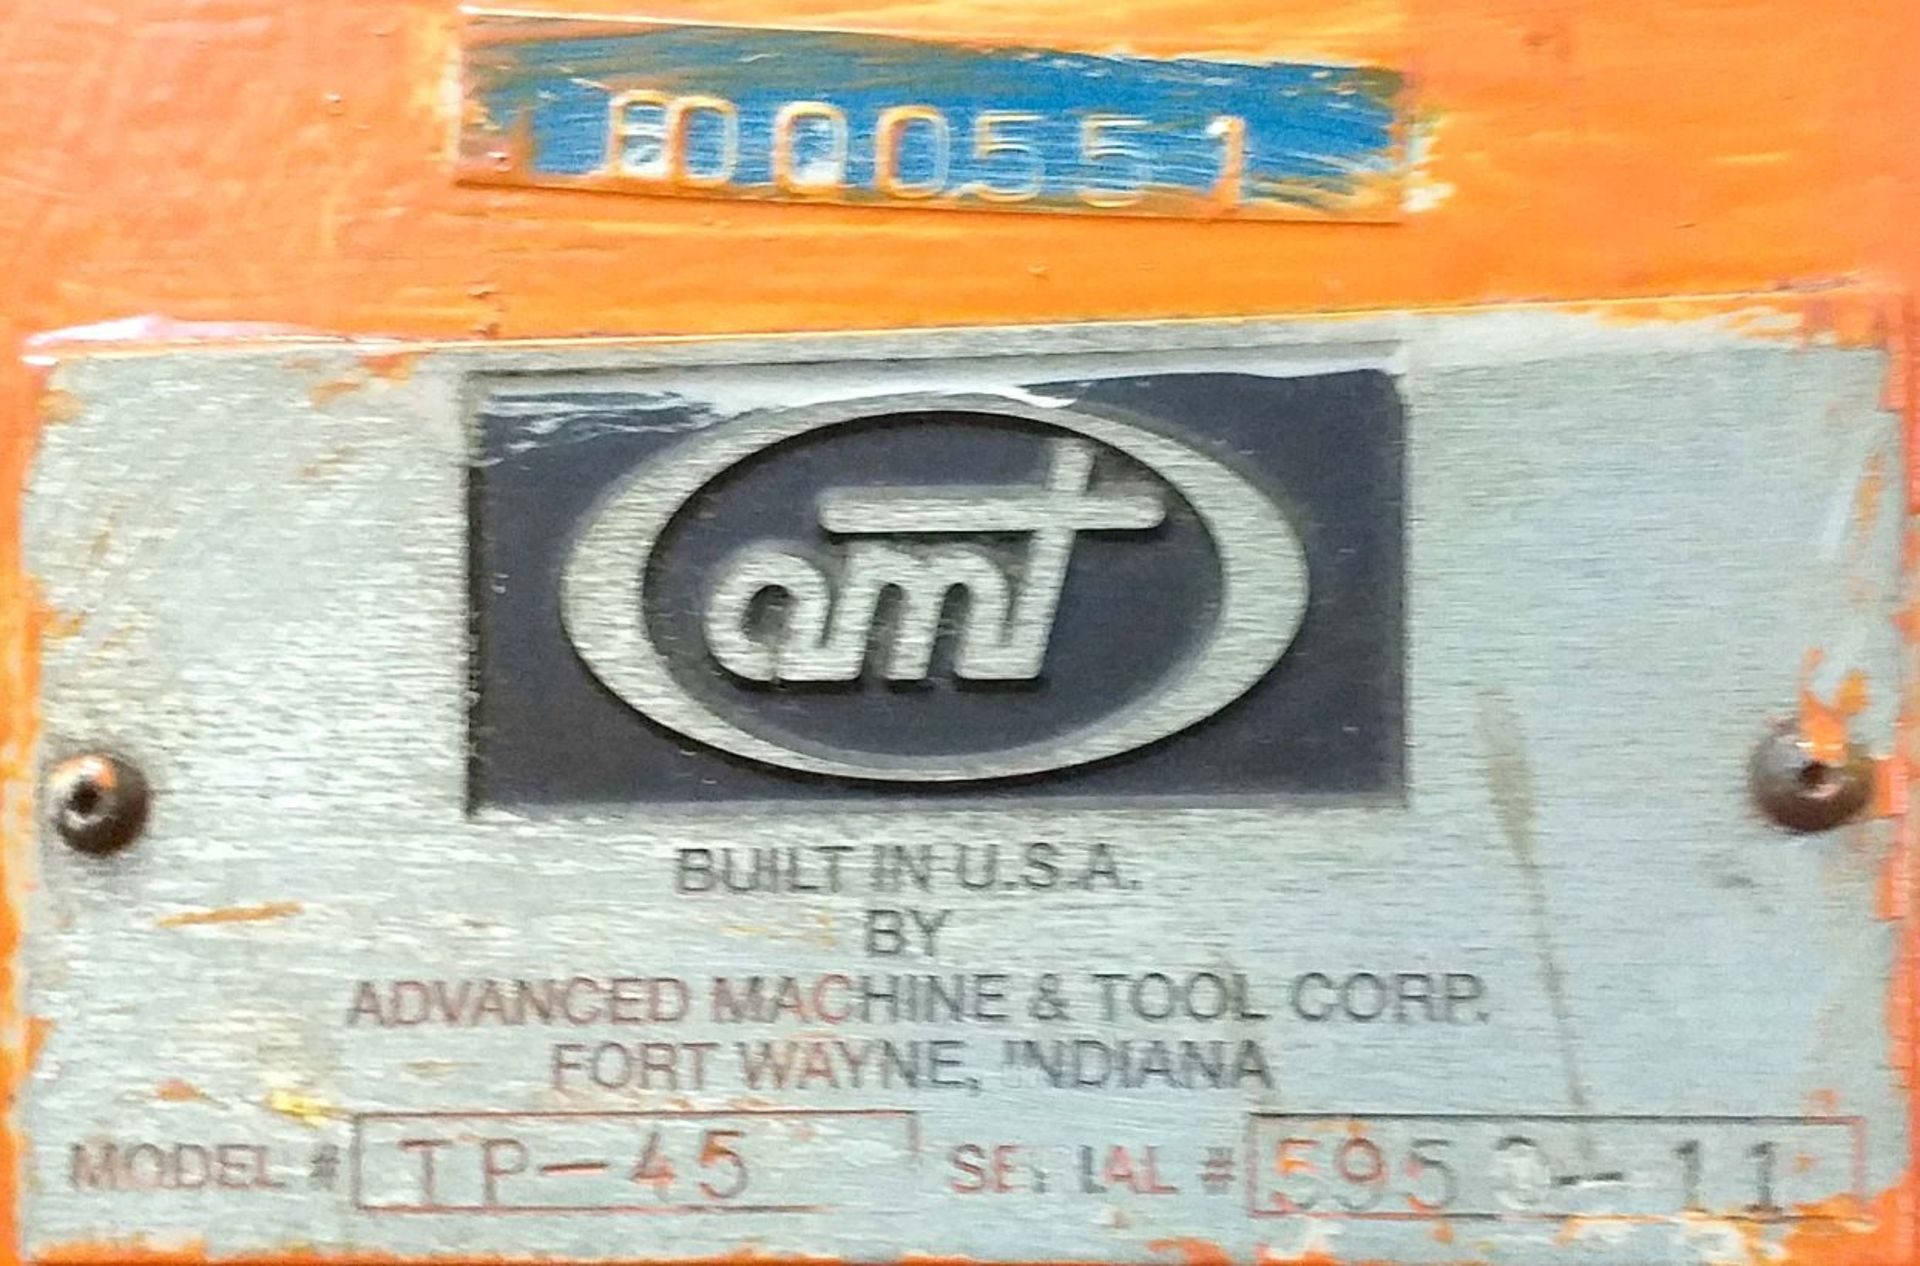 AMT final form press, Model TP-45, N-S 5950-11, 480 volts., Máquina Regal 417; Prensa forma final - Image 3 of 3